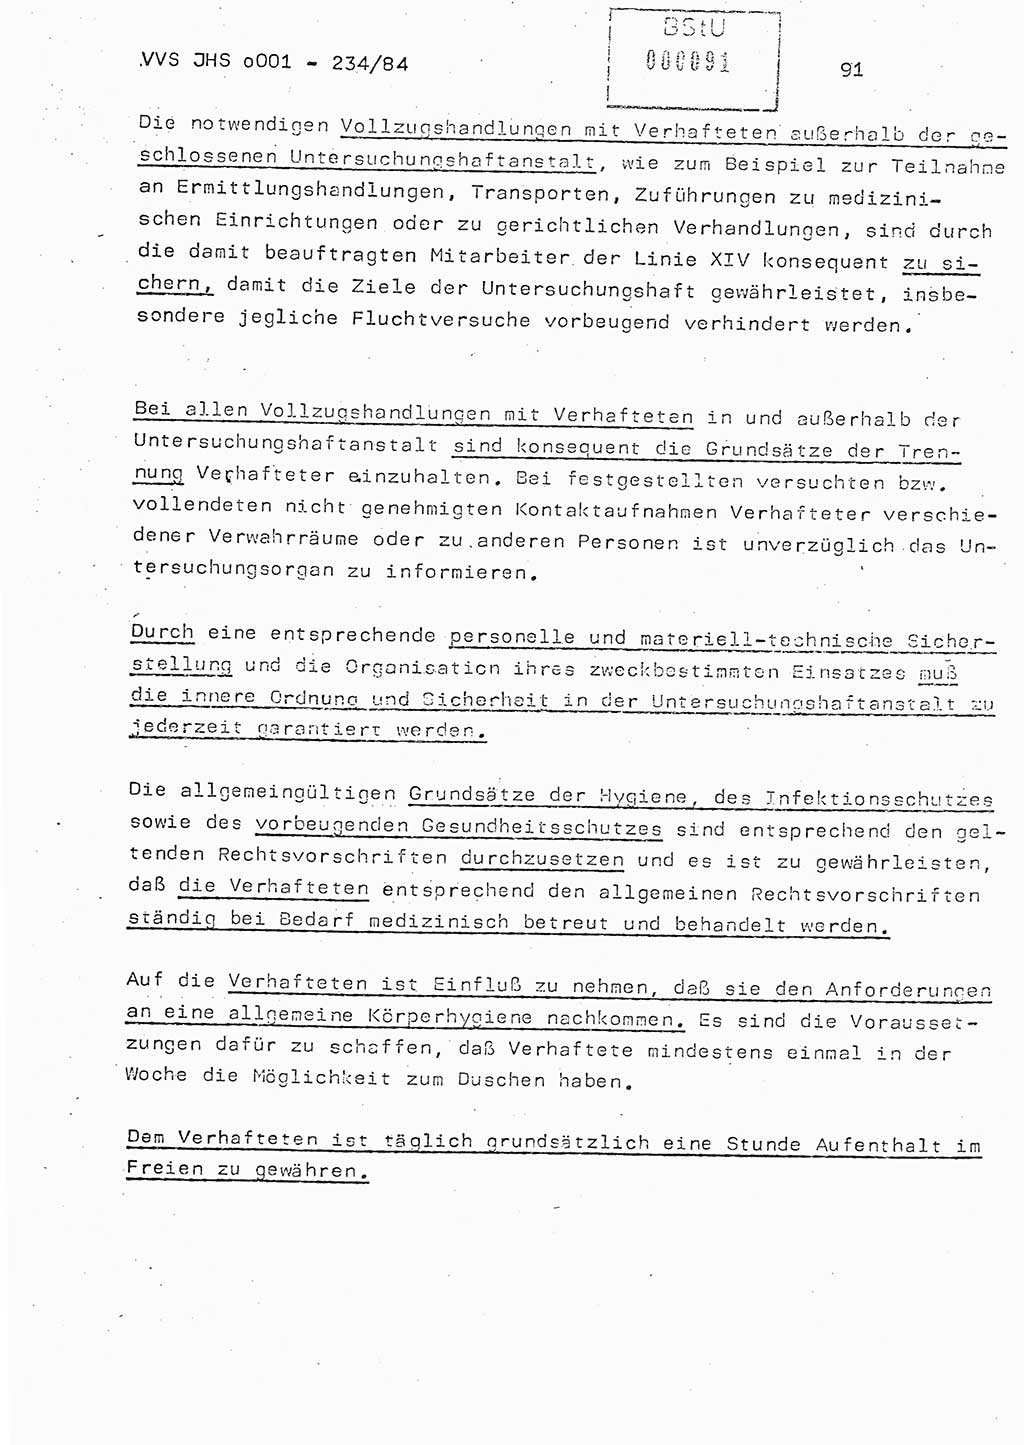 Dissertation Oberst Siegfried Rataizick (Abt. ⅩⅣ), Oberstleutnant Volkmar Heinz (Abt. ⅩⅣ), Oberstleutnant Werner Stein (HA Ⅸ), Hauptmann Heinz Conrad (JHS), Ministerium für Staatssicherheit (MfS) [Deutsche Demokratische Republik (DDR)], Juristische Hochschule (JHS), Vertrauliche Verschlußsache (VVS) o001-234/84, Potsdam 1984, Seite 91 (Diss. MfS DDR JHS VVS o001-234/84 1984, S. 91)